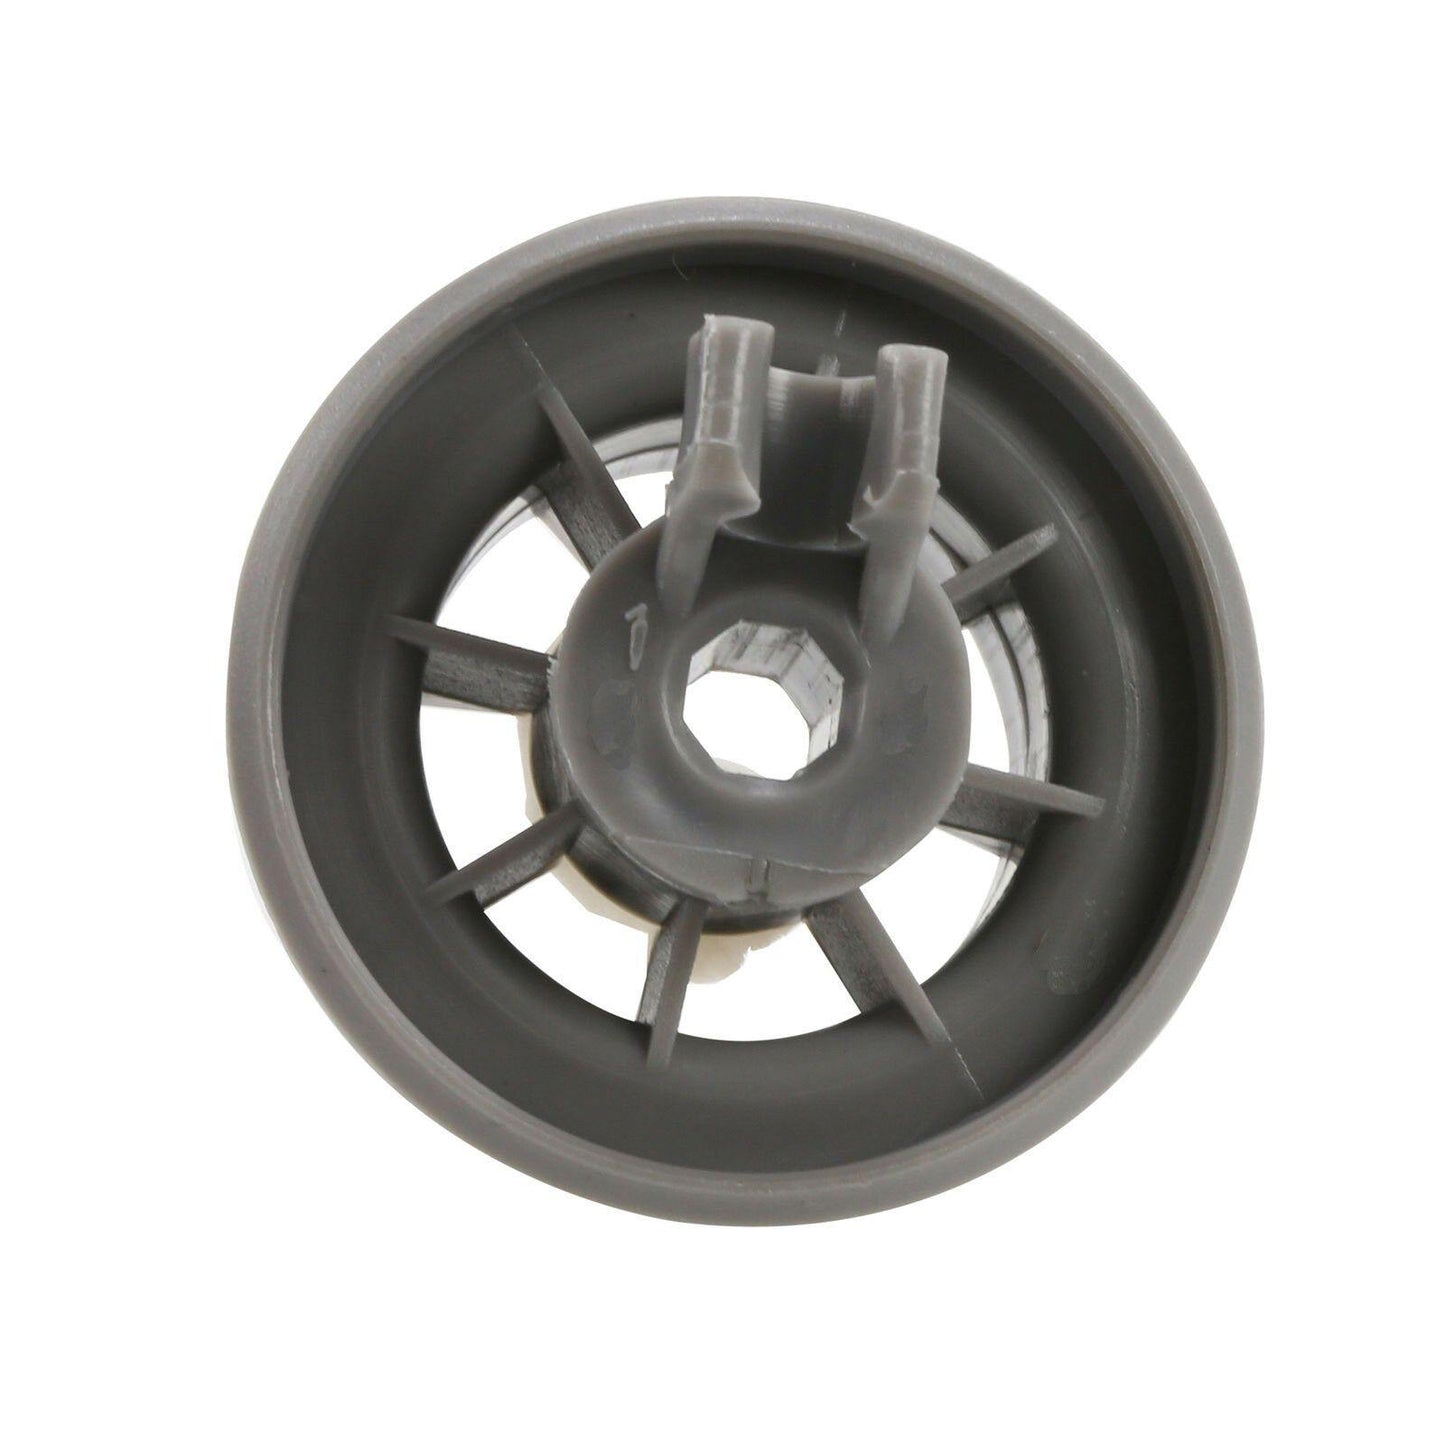 4X Diswasher Lower Bottom Bakset Wheel For Ariston LBF5BXAUS LFB5M019AUS Sparesbarn